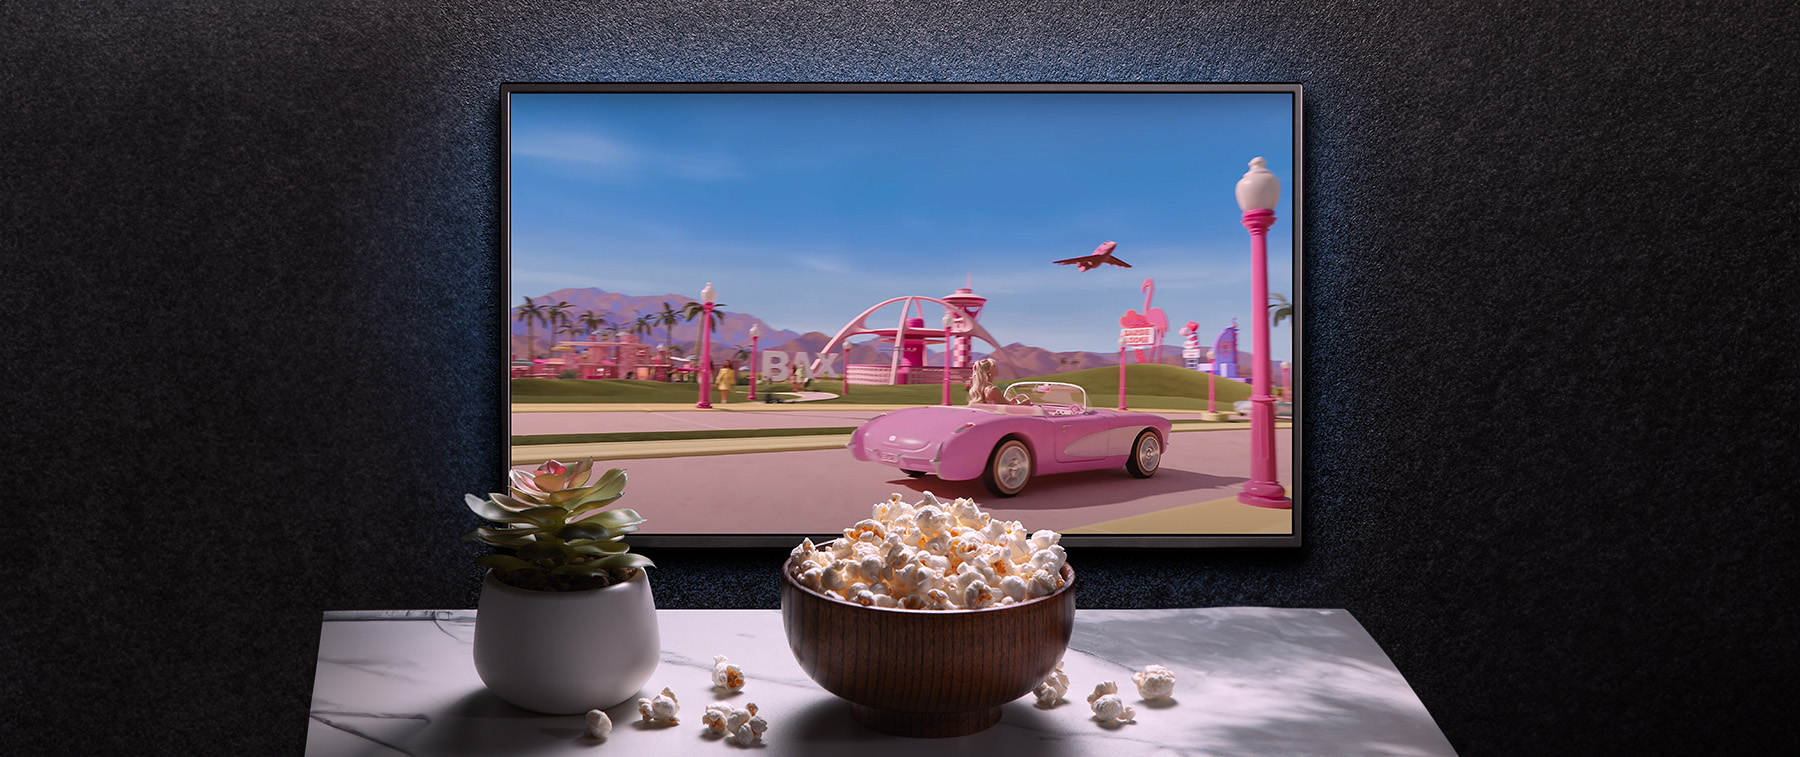 Mesa con palomitas y película de barbie en la televisión